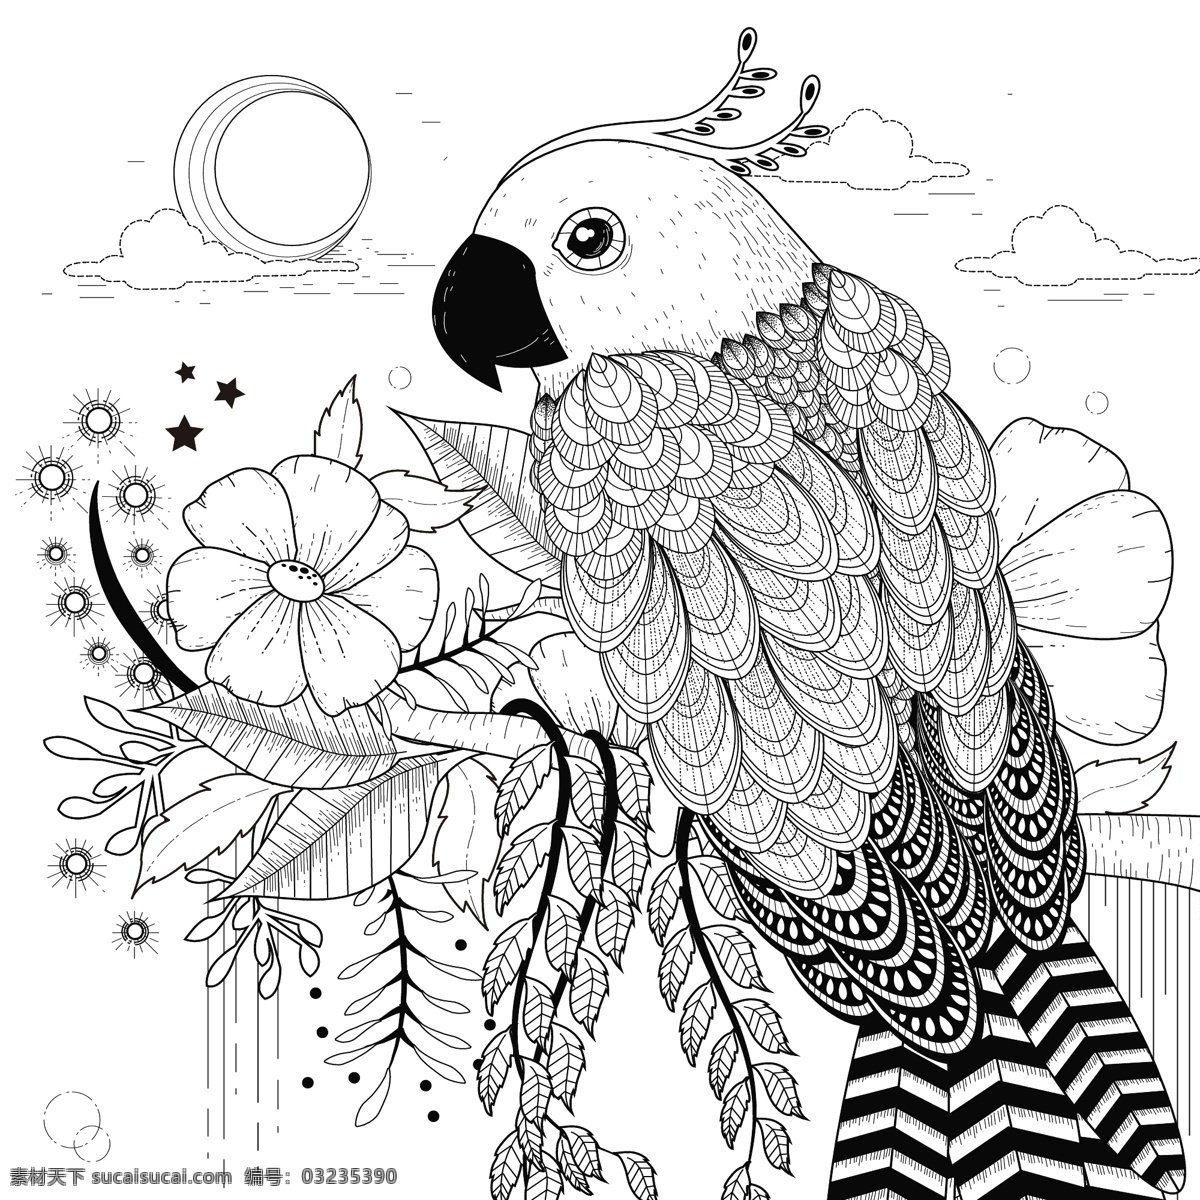 创意 卡通 鹦鹉 动物 头像 矢量 羽毛 鸟类 风景 纹身 文艺 复古 花纹 插画